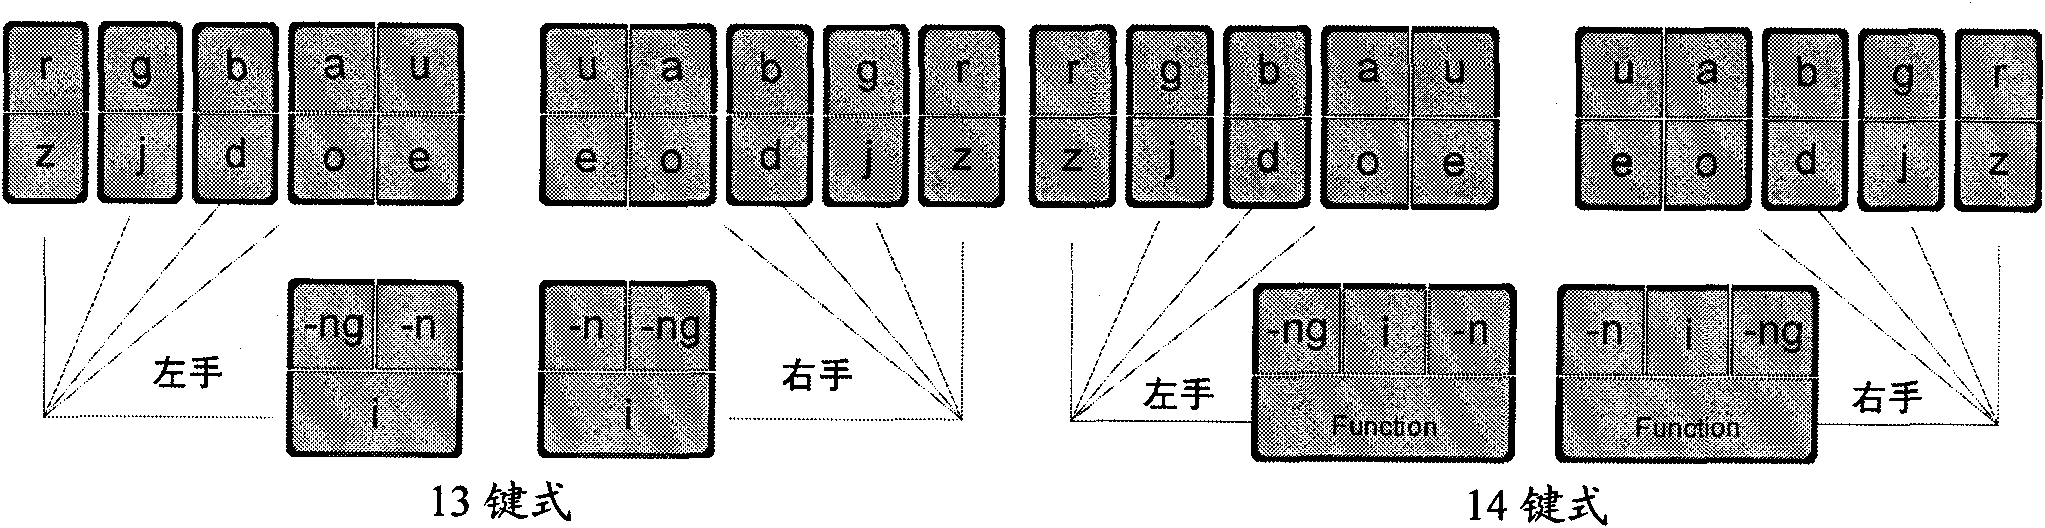 Input method of multi-language general multi-key co-striking type and keyboard device